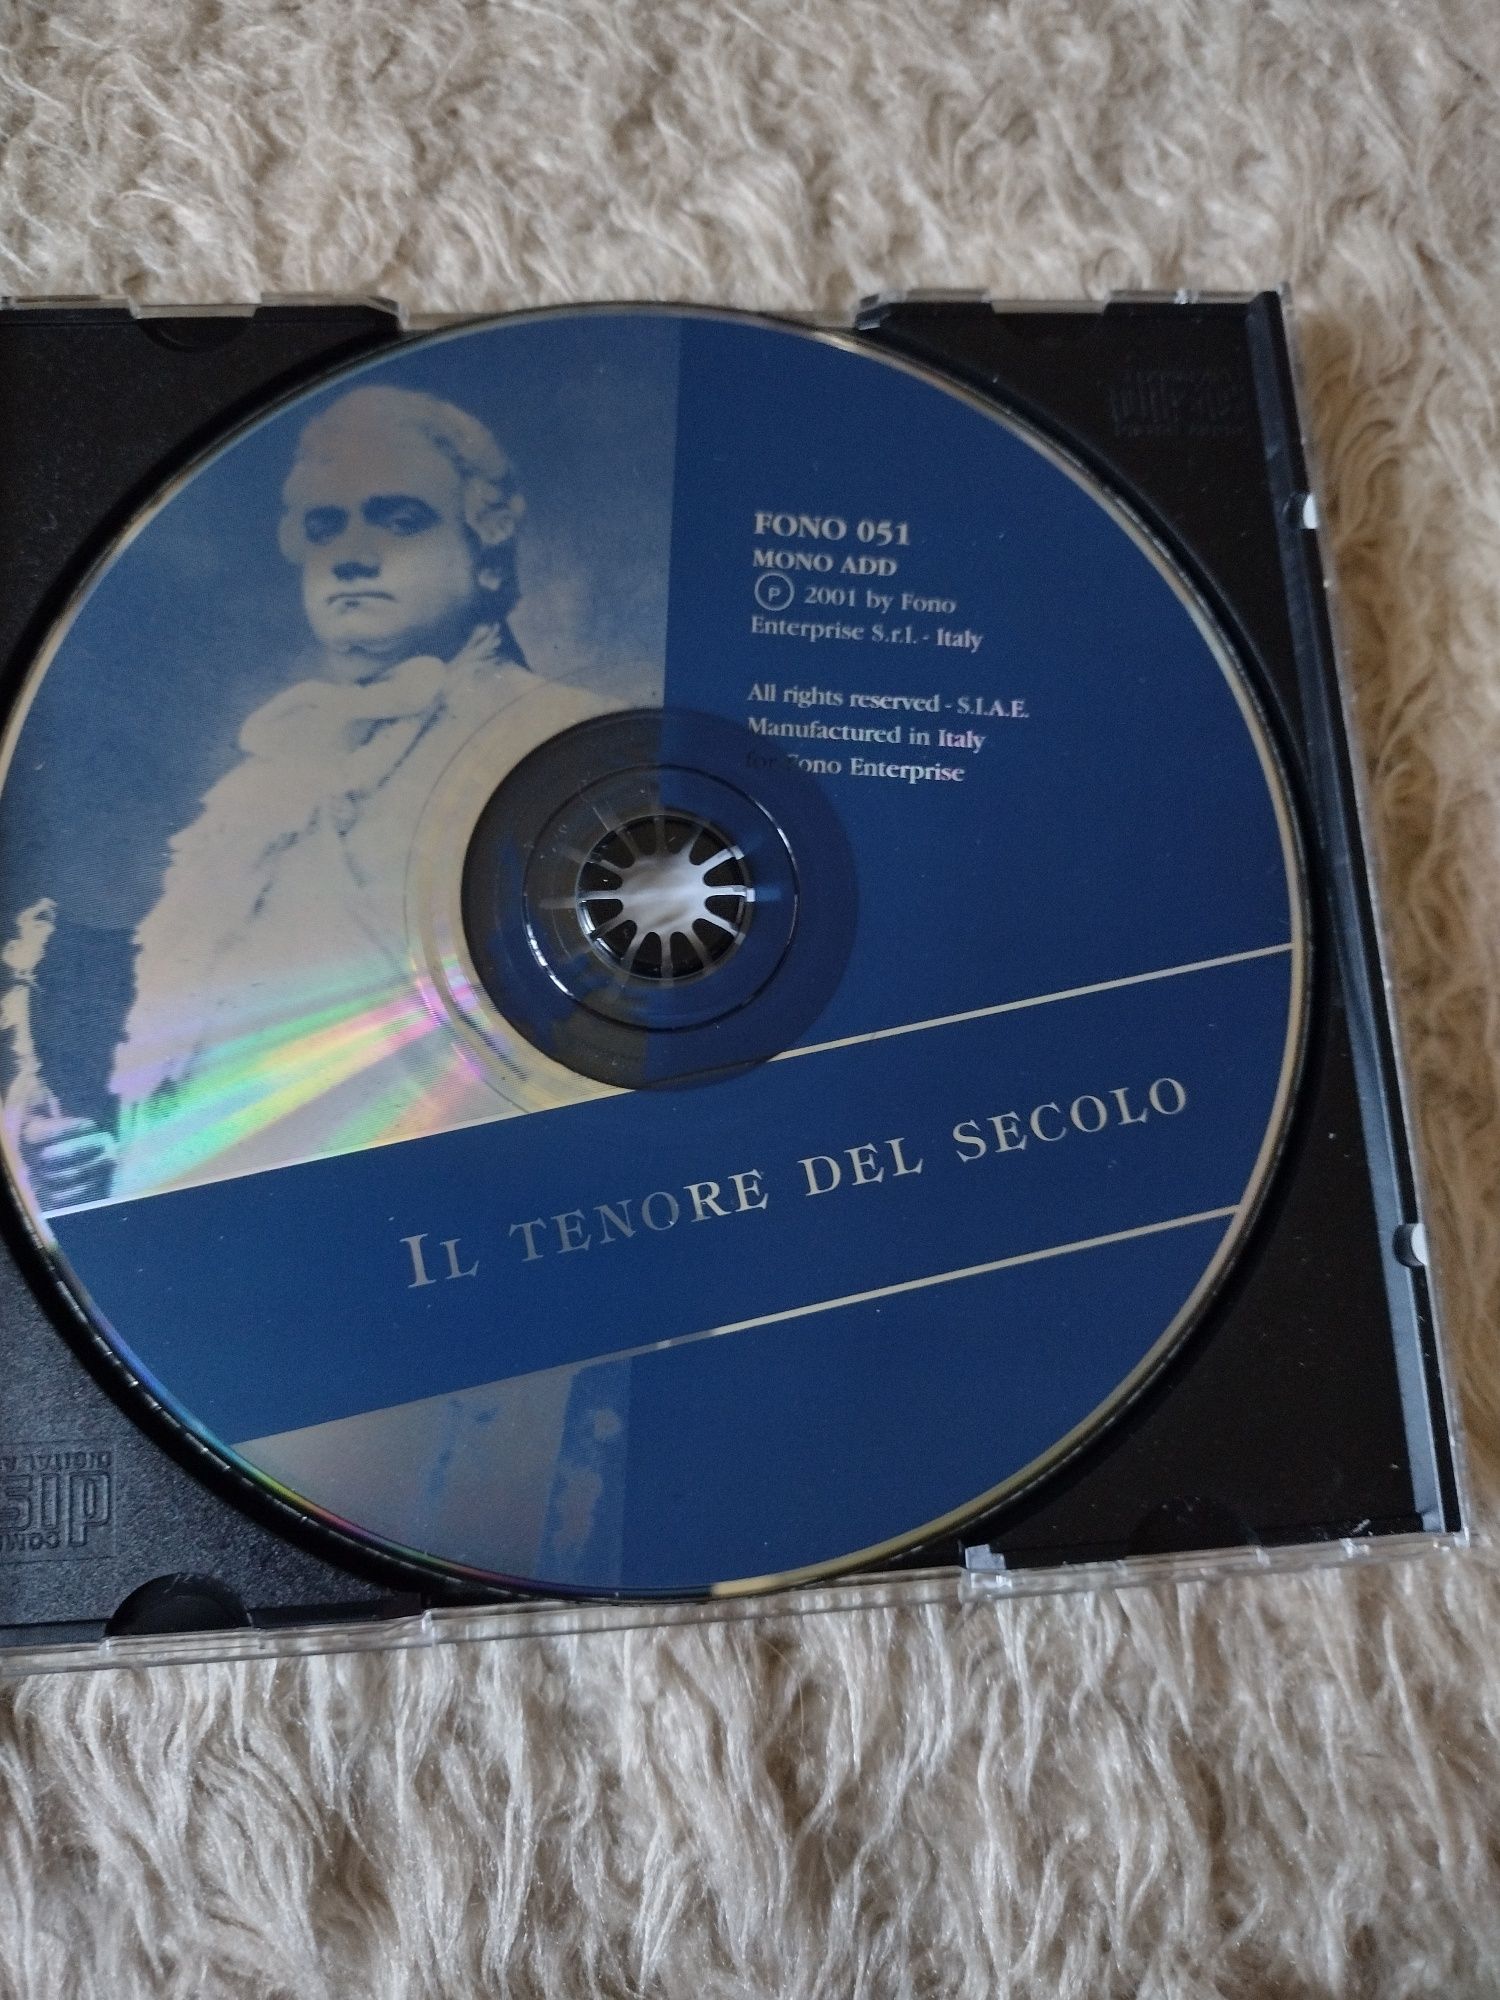 Płyta CD Ił tenore del Secolo